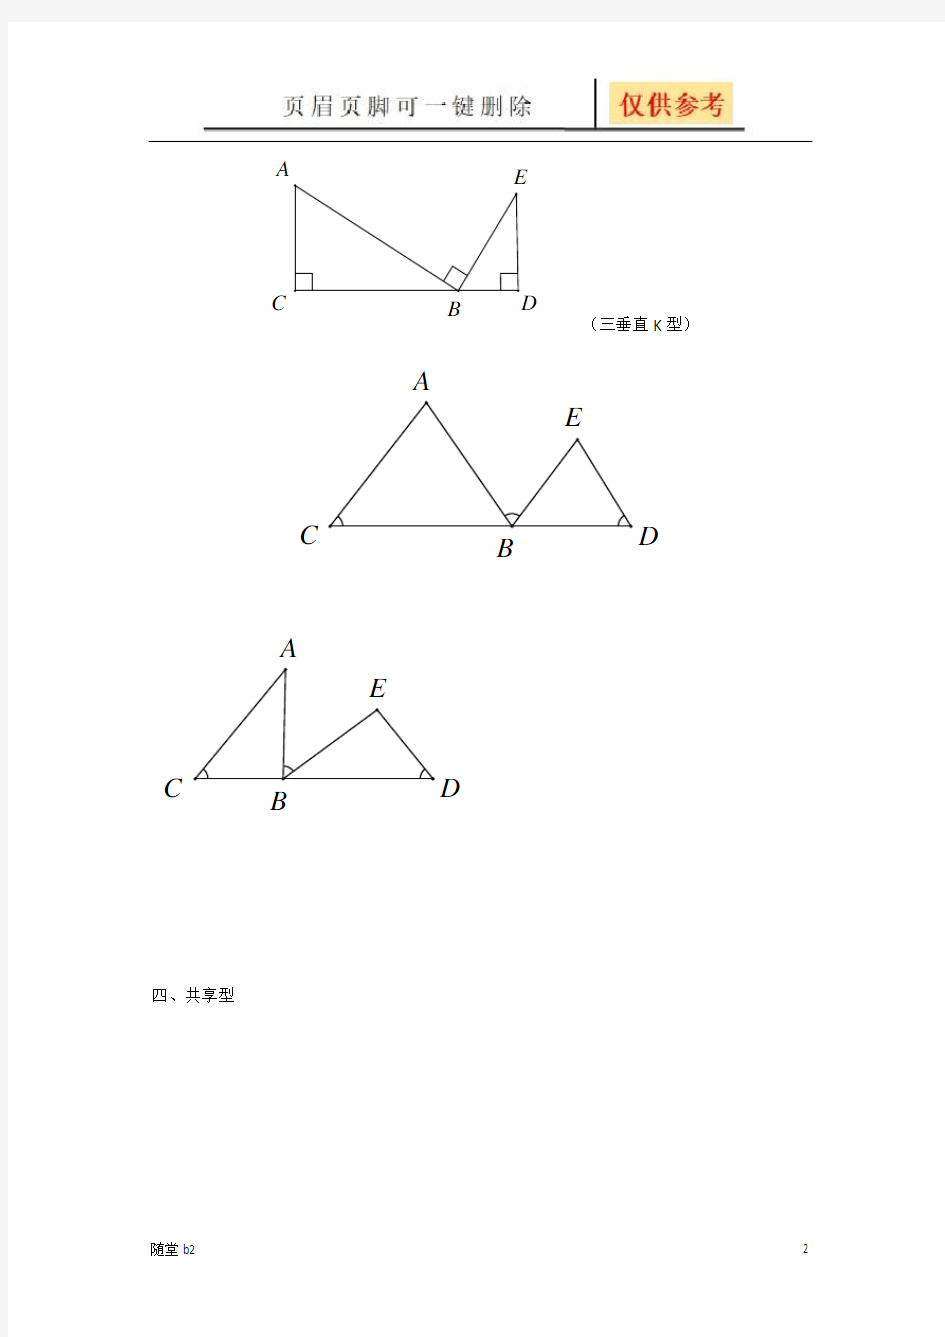 相似三角形基本类型(教育材料)